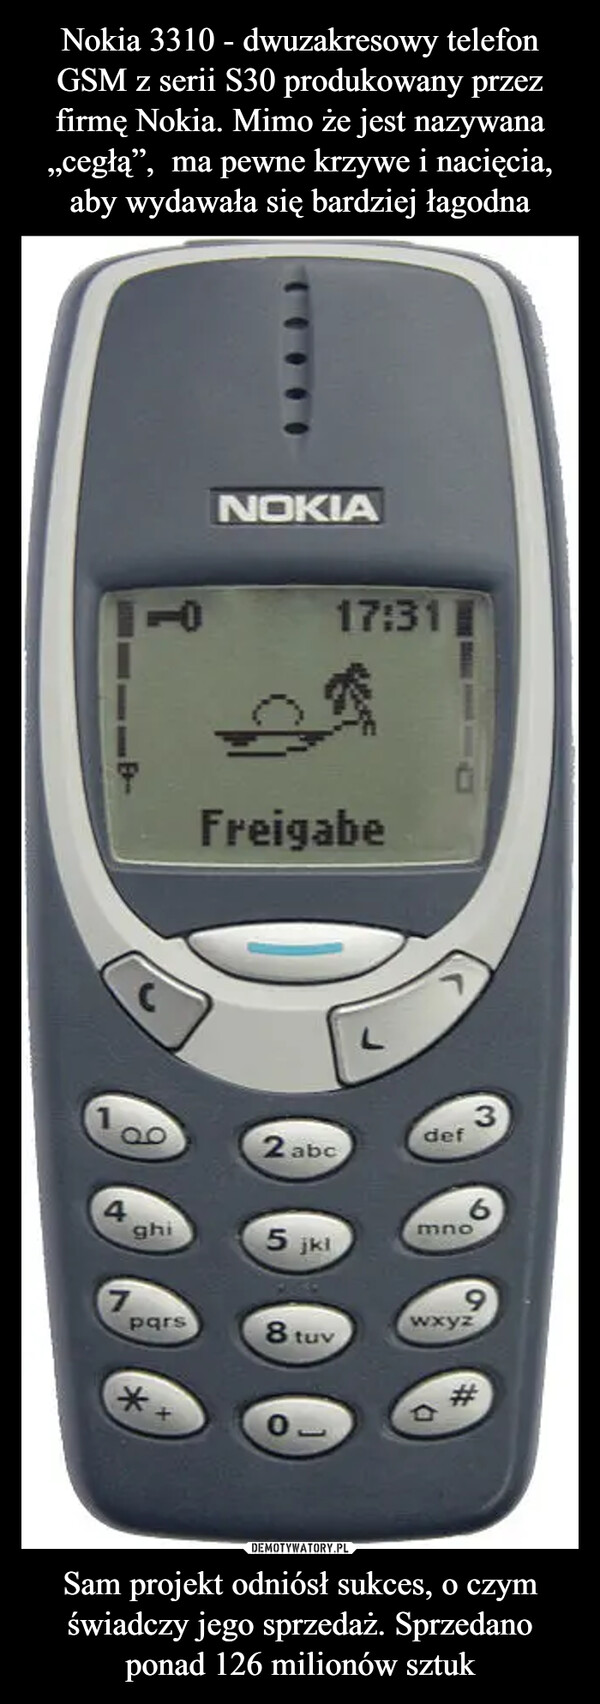 Nokia 3310 - dwuzakresowy telefon GSM z serii S30 produkowany przez firmę Nokia. Mimo że jest nazywana „cegłą”,  ma pewne krzywe i nacięcia, aby wydawała się bardziej łagodna Sam projekt odniósł sukces, o czym świadczy jego sprzedaż. Sprzedano ponad 126 milionów sztuk